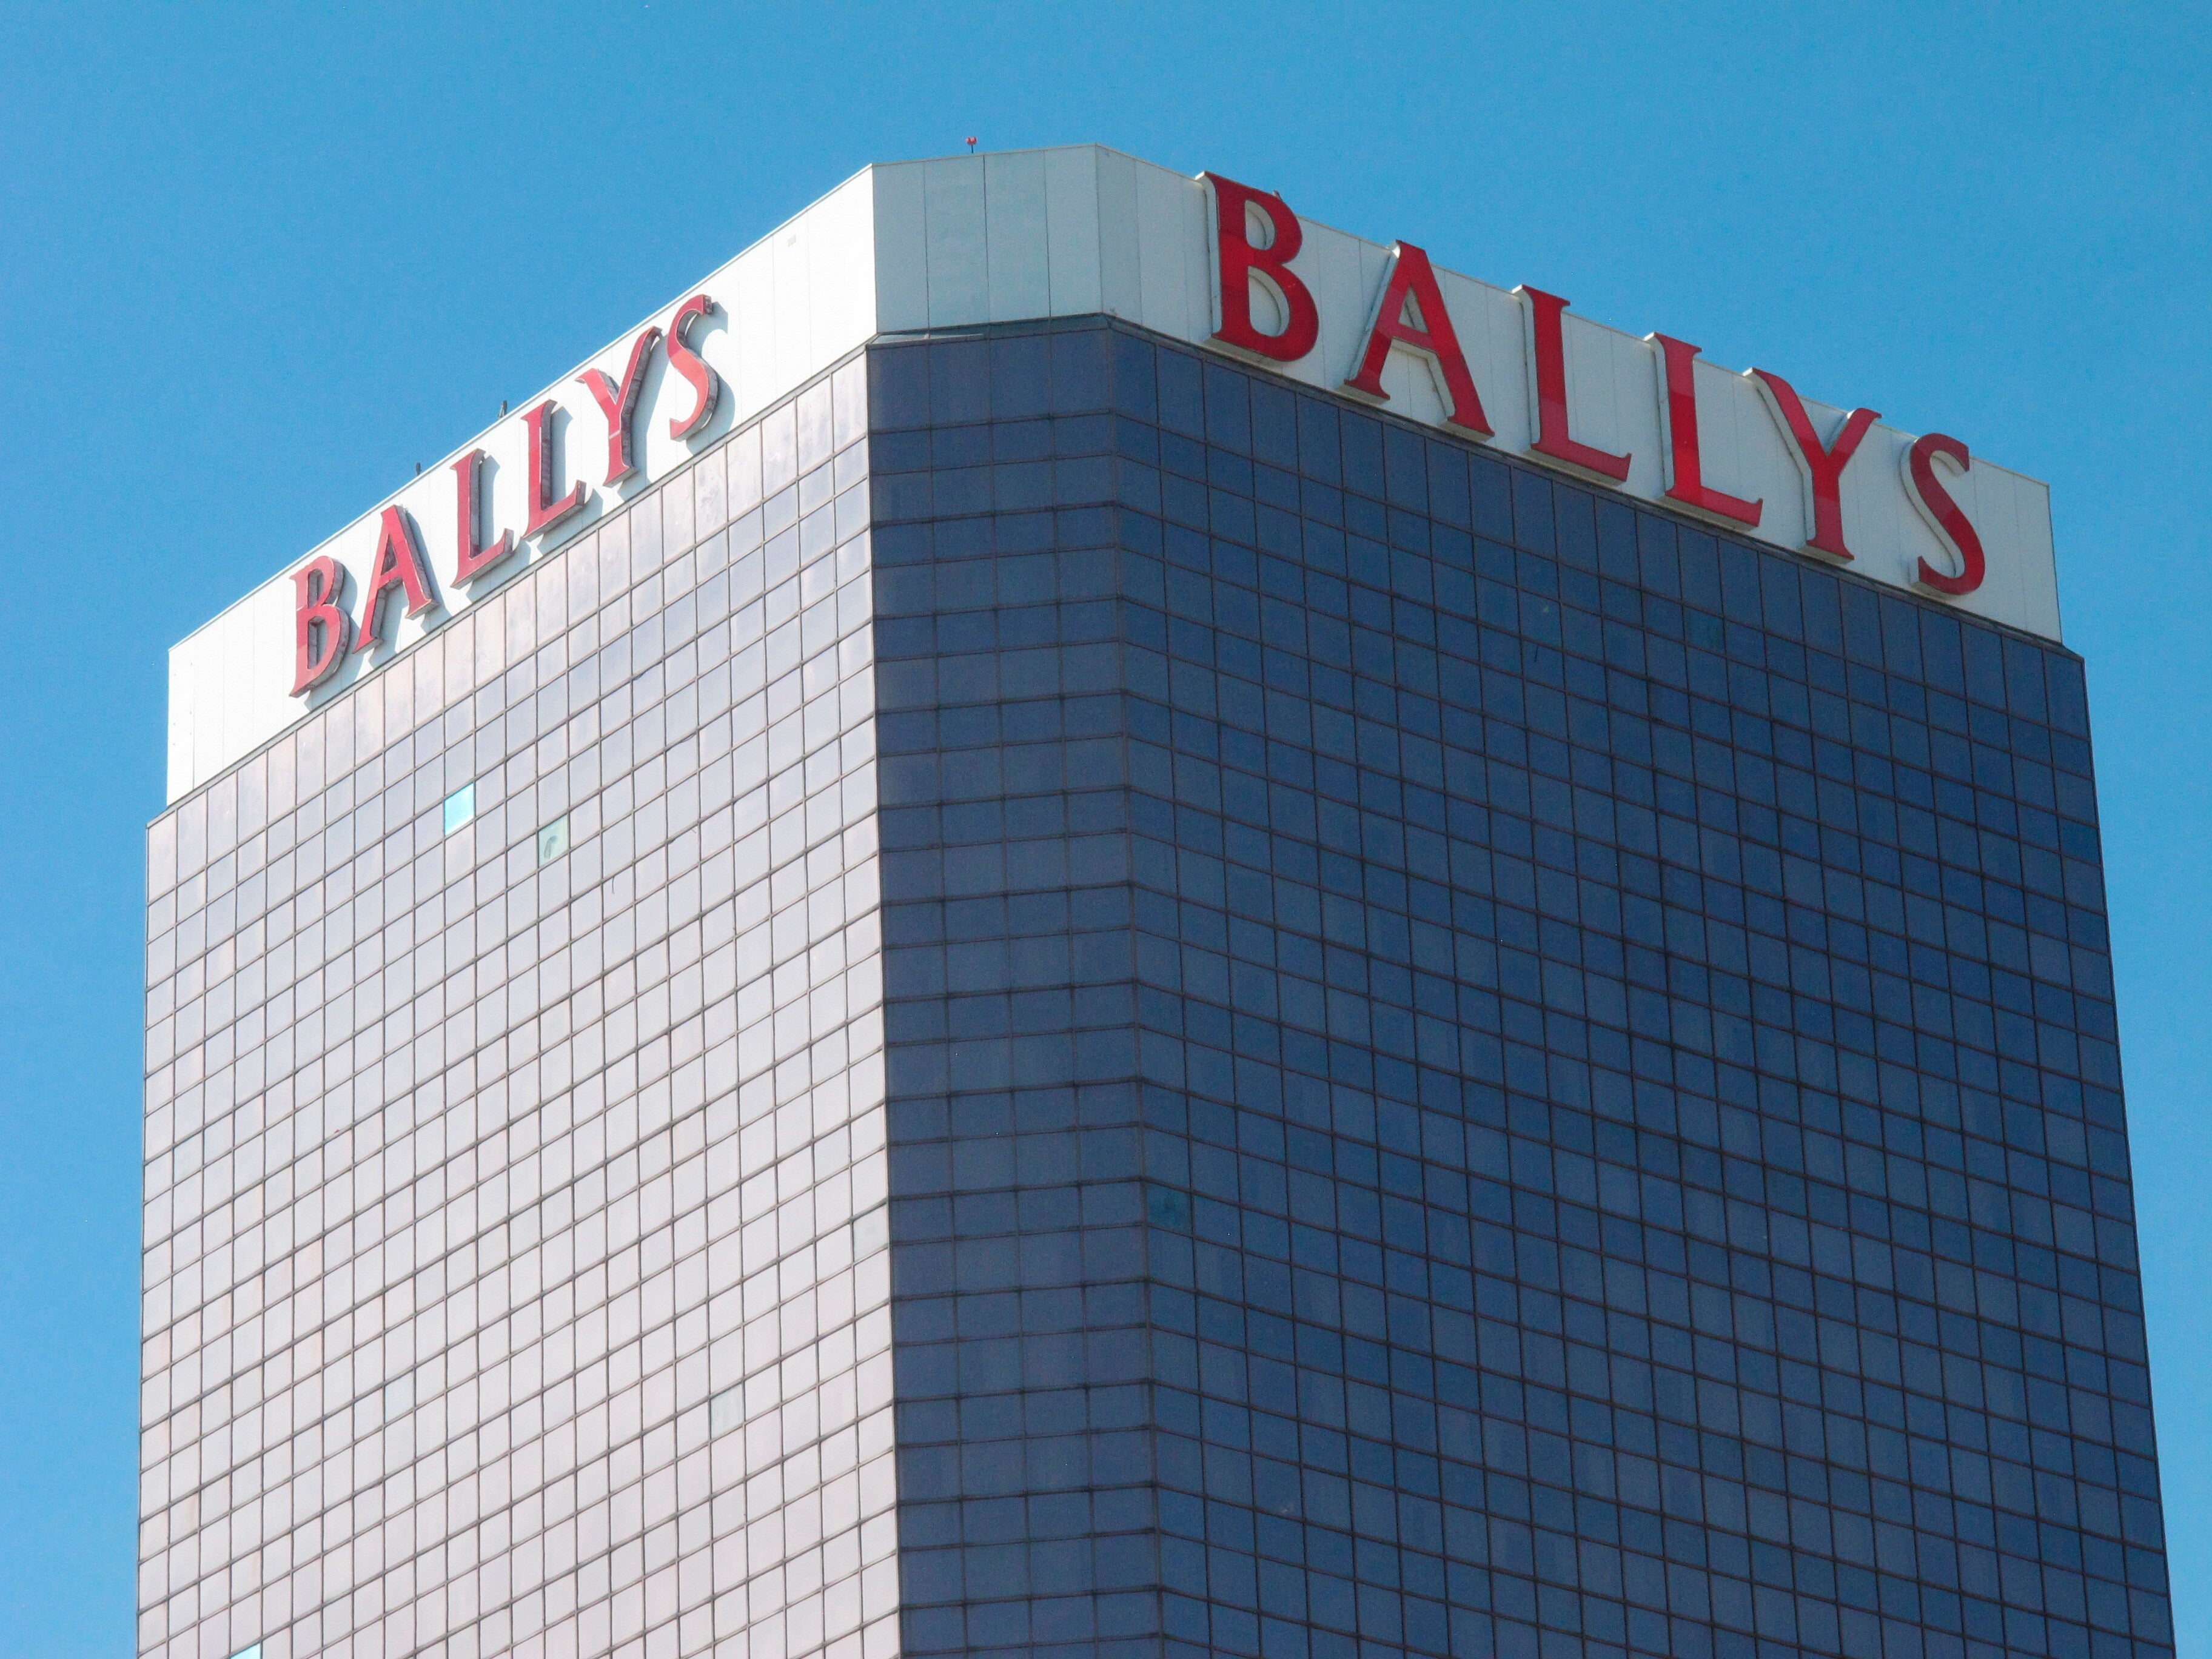 ballys casino resort